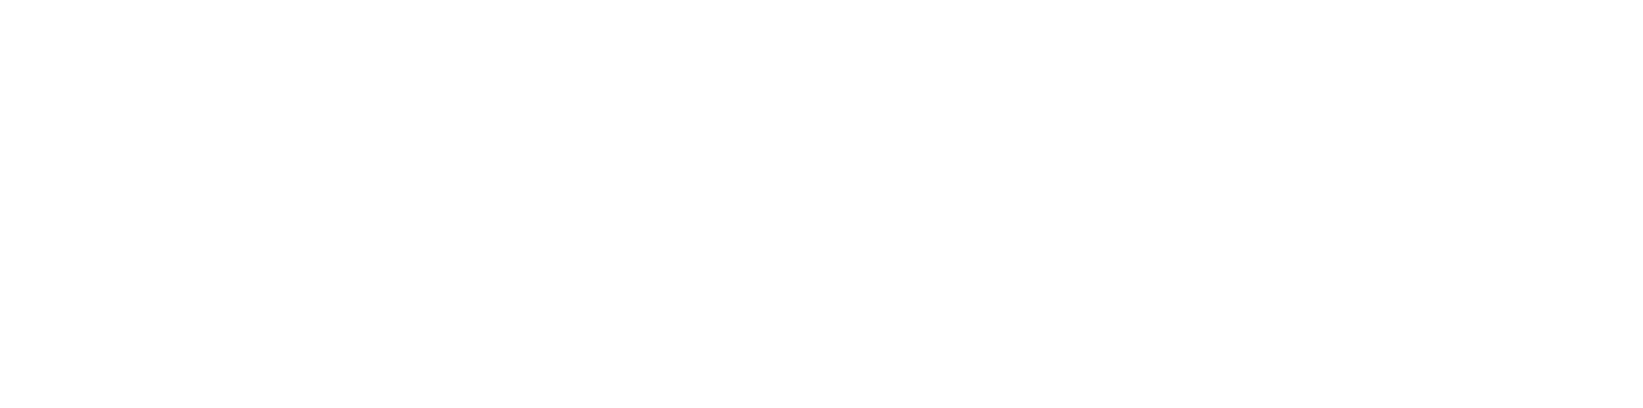 Ambev logo large for dark backgrounds (transparent PNG)